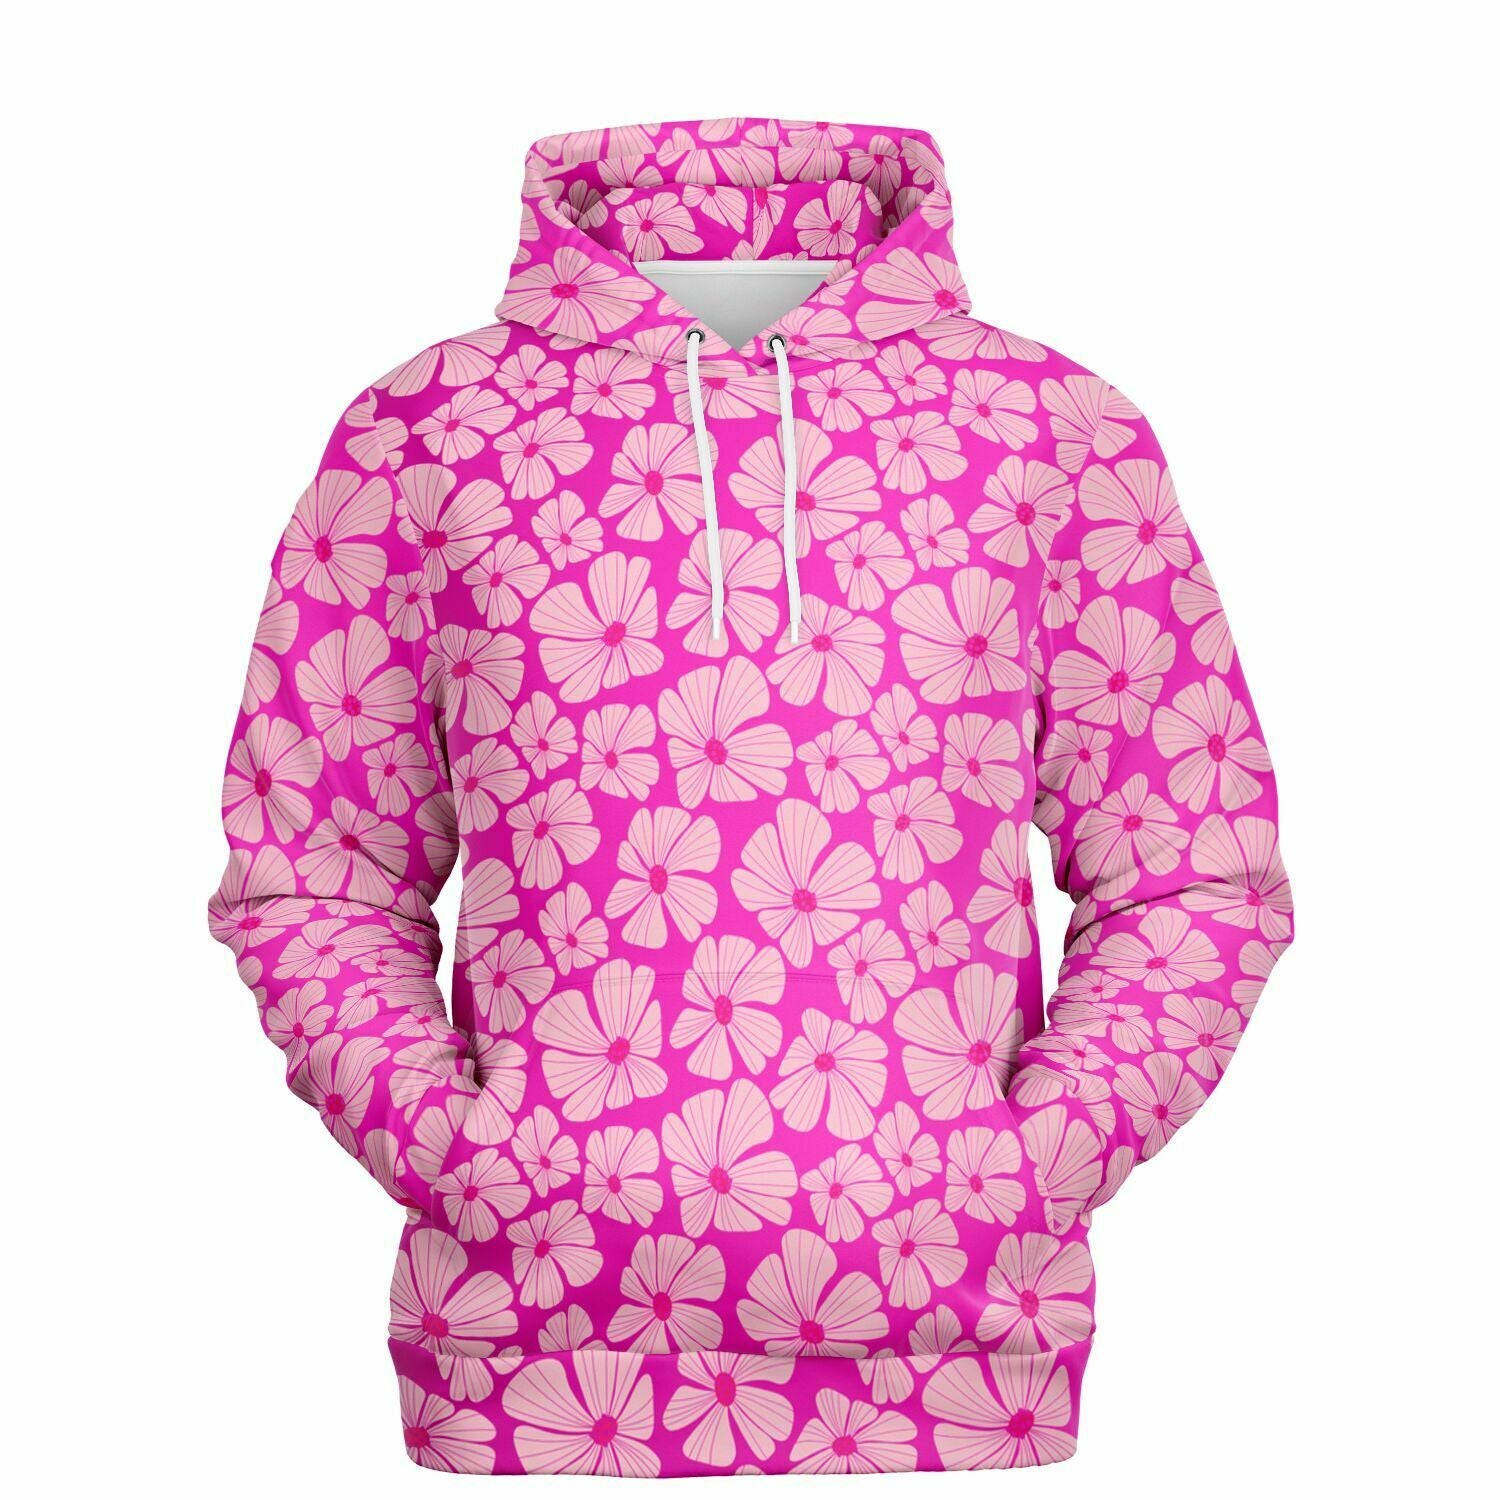 Elivior hot pink hoodie